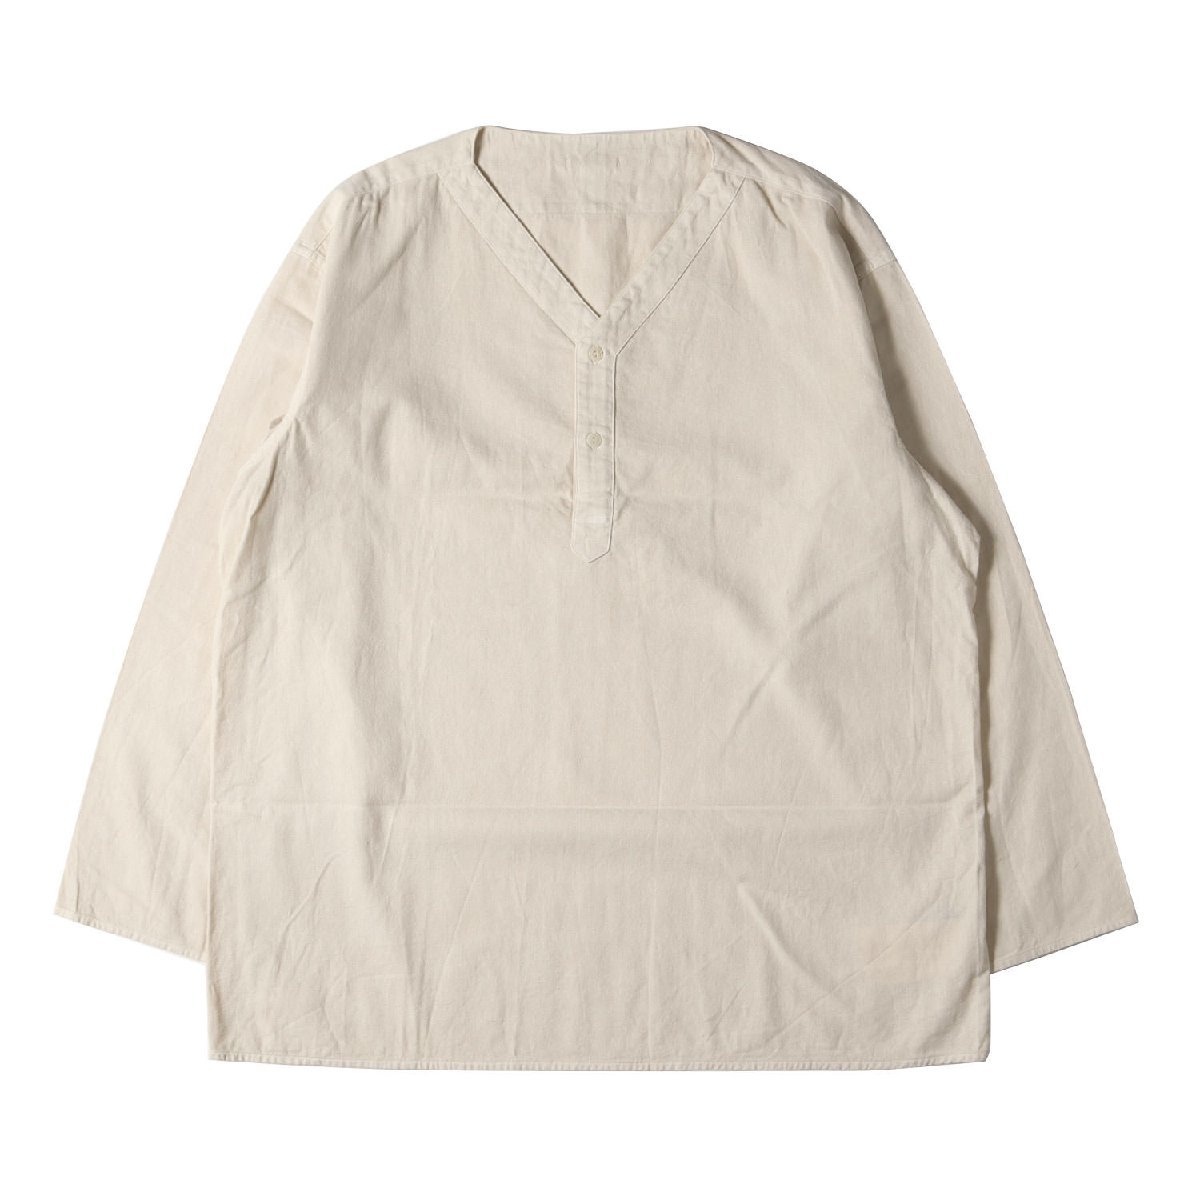 美品 Kinema キネマ シャツ サイズ:M 23SS 受注販売品 ピグメント染め Vネック pigment sleeping shirt KNM-23SS-SH10 トップス ブランド